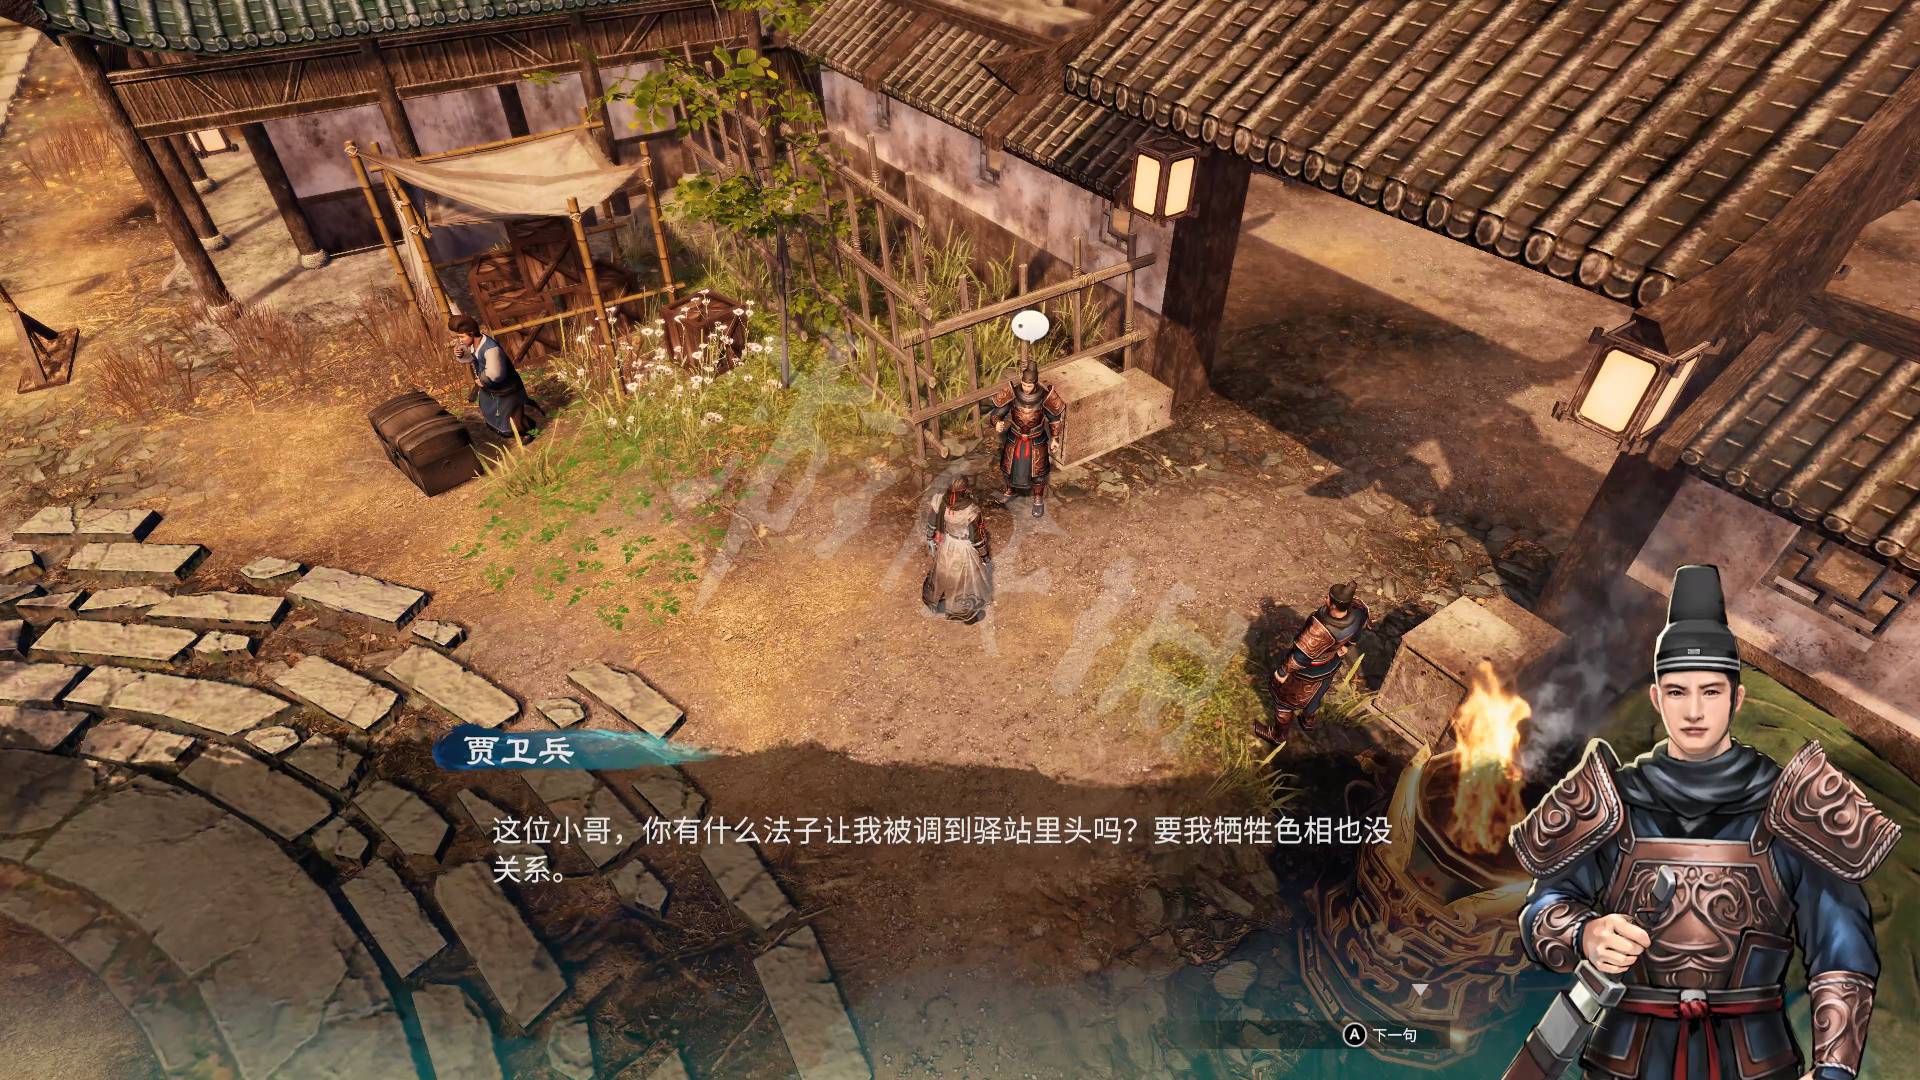 《天命奇御2》全流程解謎圖文攻略 基礎系統玩法教學_京南驛-驛站街道